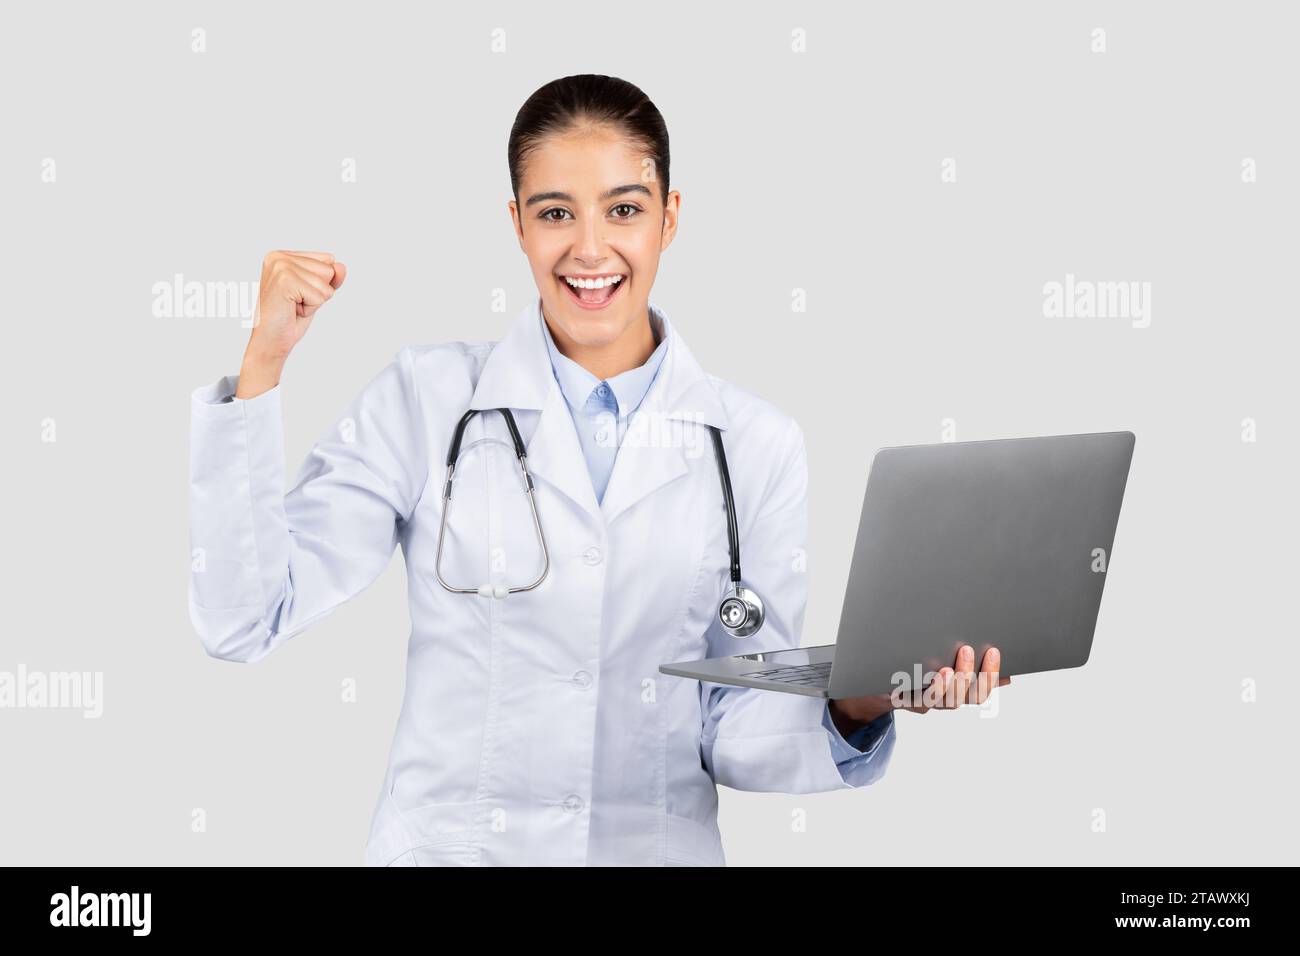 Heureux millennial femme médecin européenne avec ordinateur, célébrer la victoire, le succès avec le poing de hausse dans le manteau blanc Banque D'Images